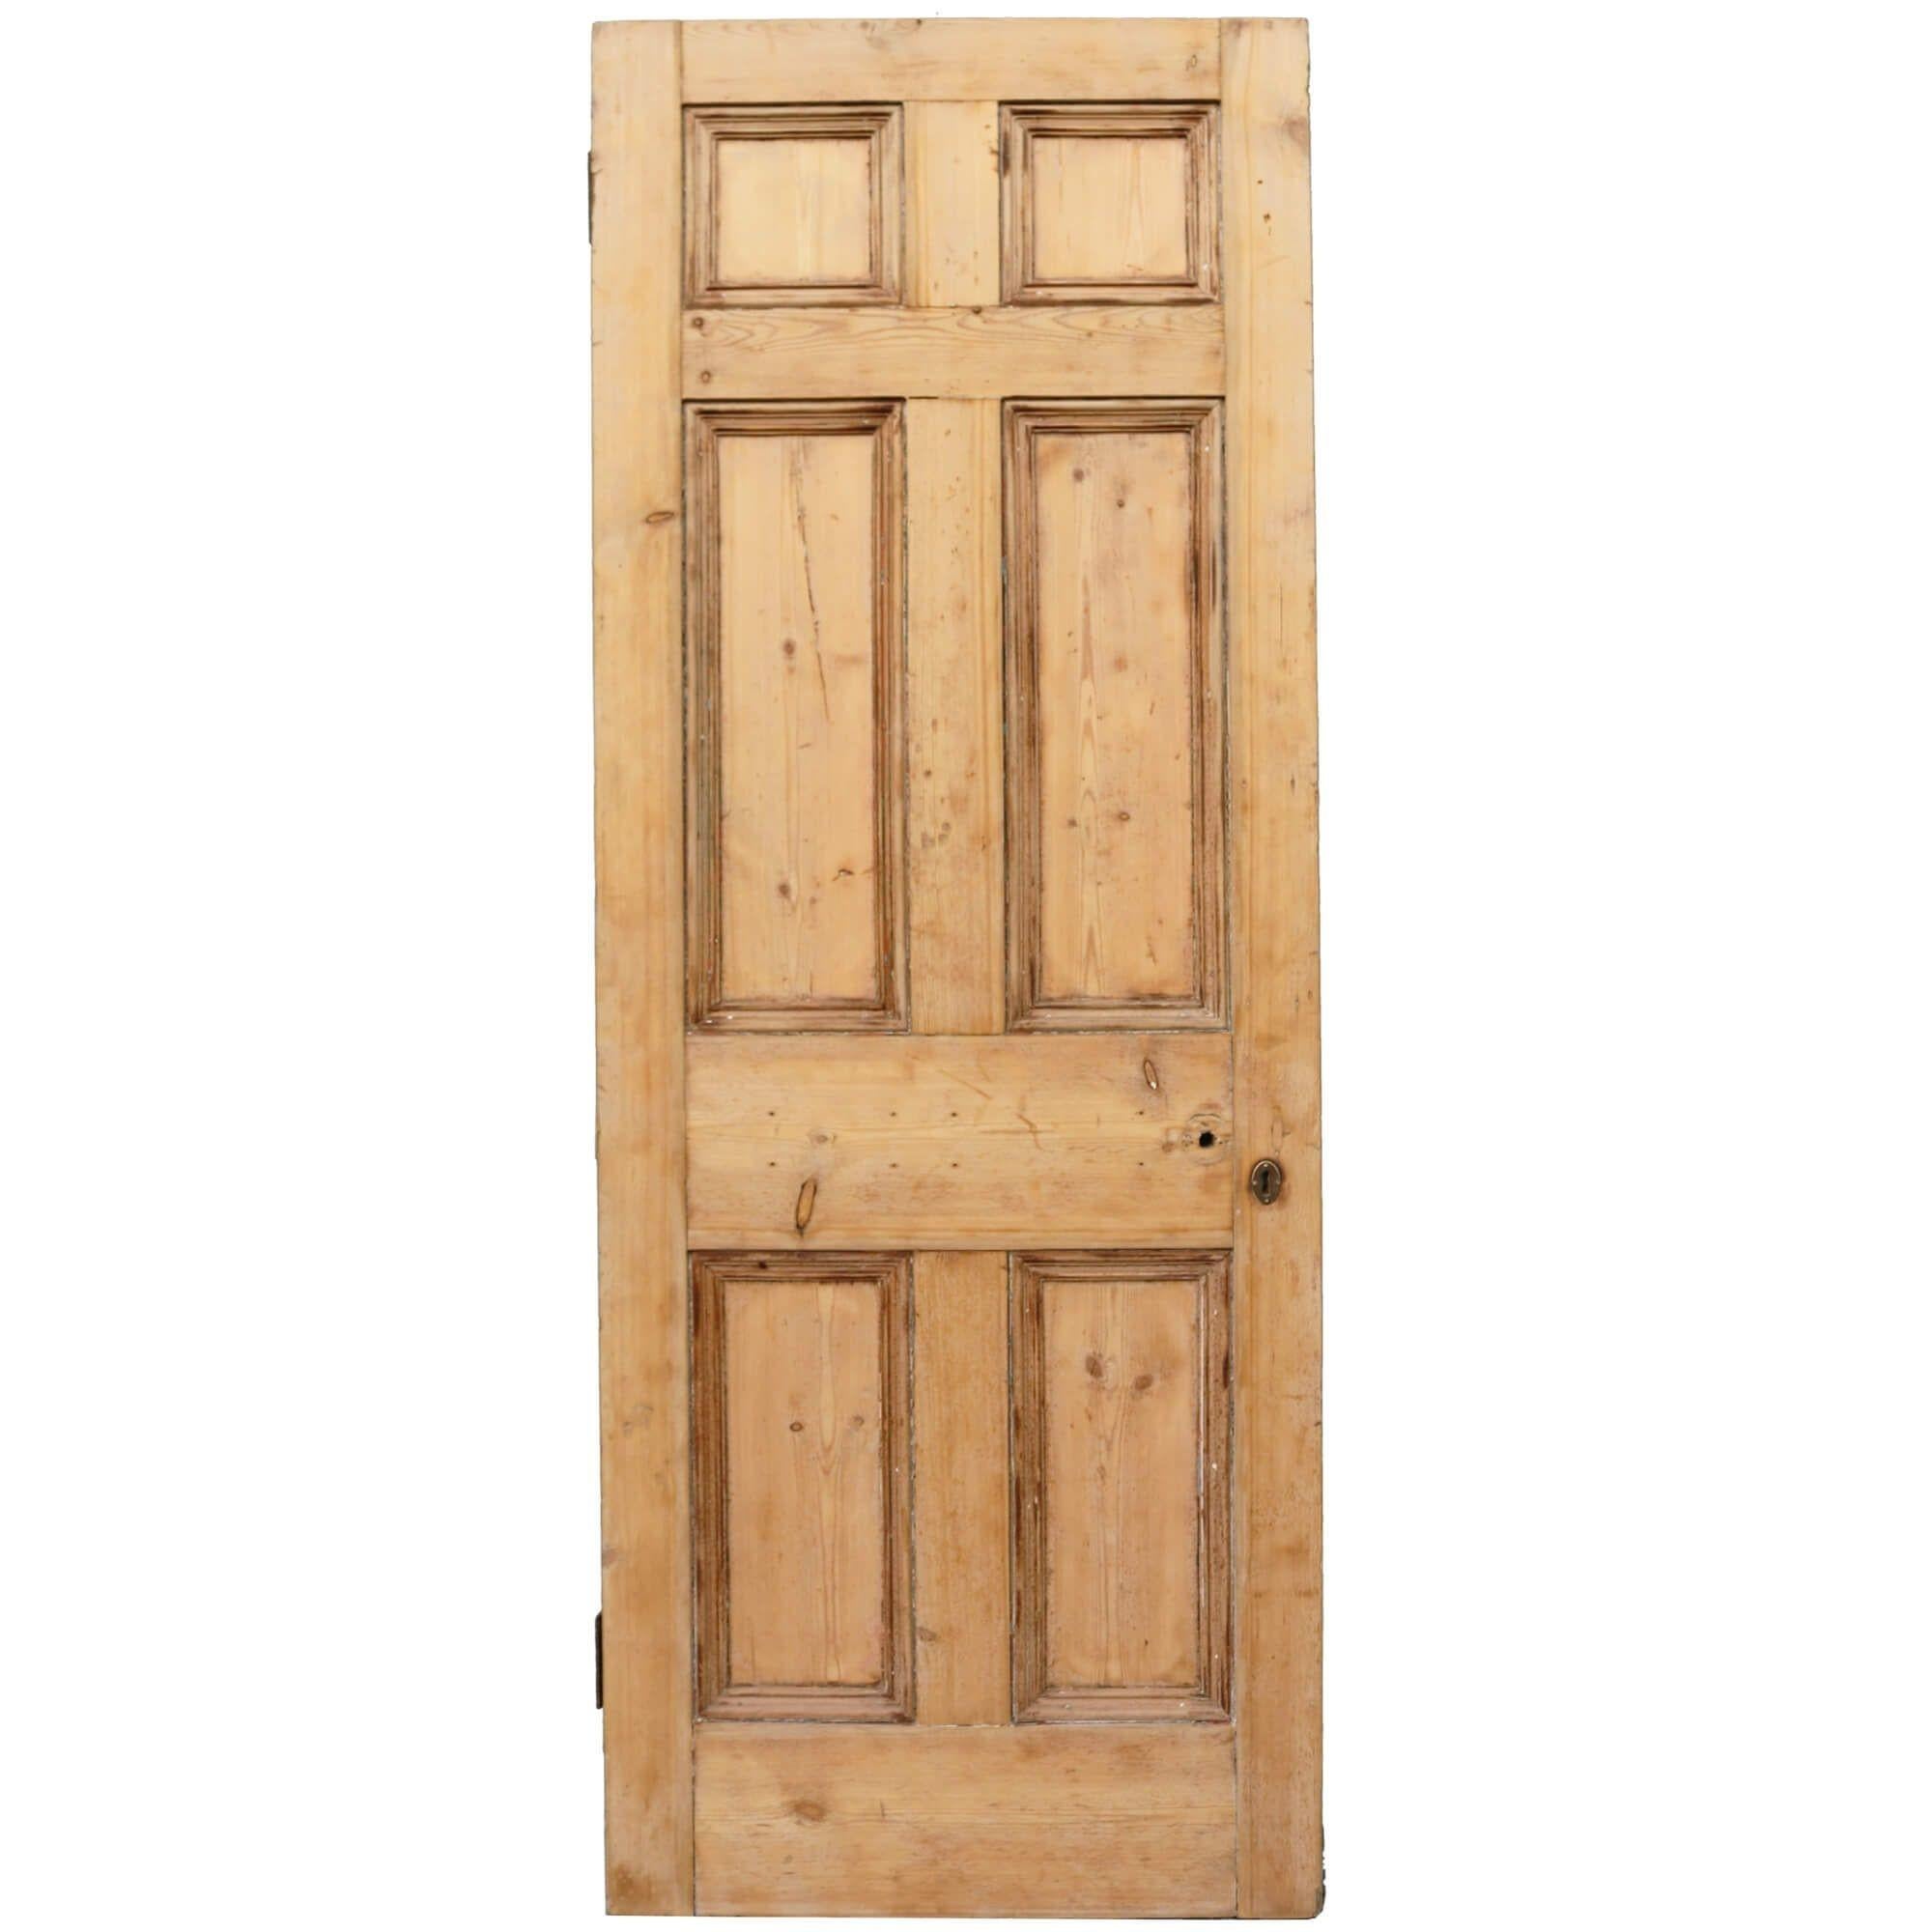 Une porte en pin victorien à 6 panneaux de bonne qualité, récupérée, pour un usage intérieur ou extérieur. Datant des années 1890, cette porte ancienne comporte 6 panneaux de chaque côté, construits dans des styles différents de part et d'autre